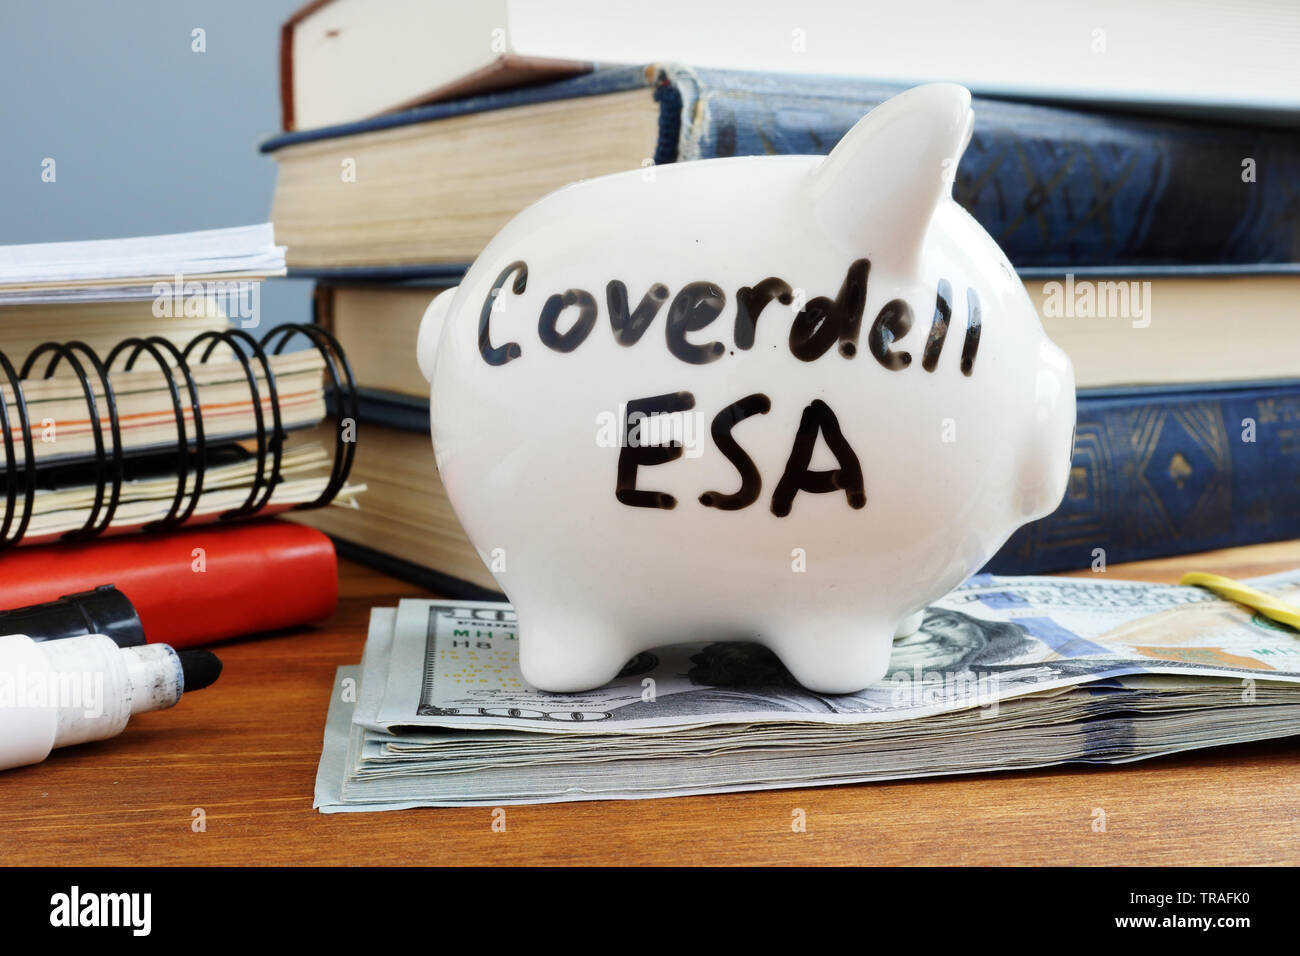 Coverdell ESA Education gespart. Piggy Bank und Geld. Stockfoto